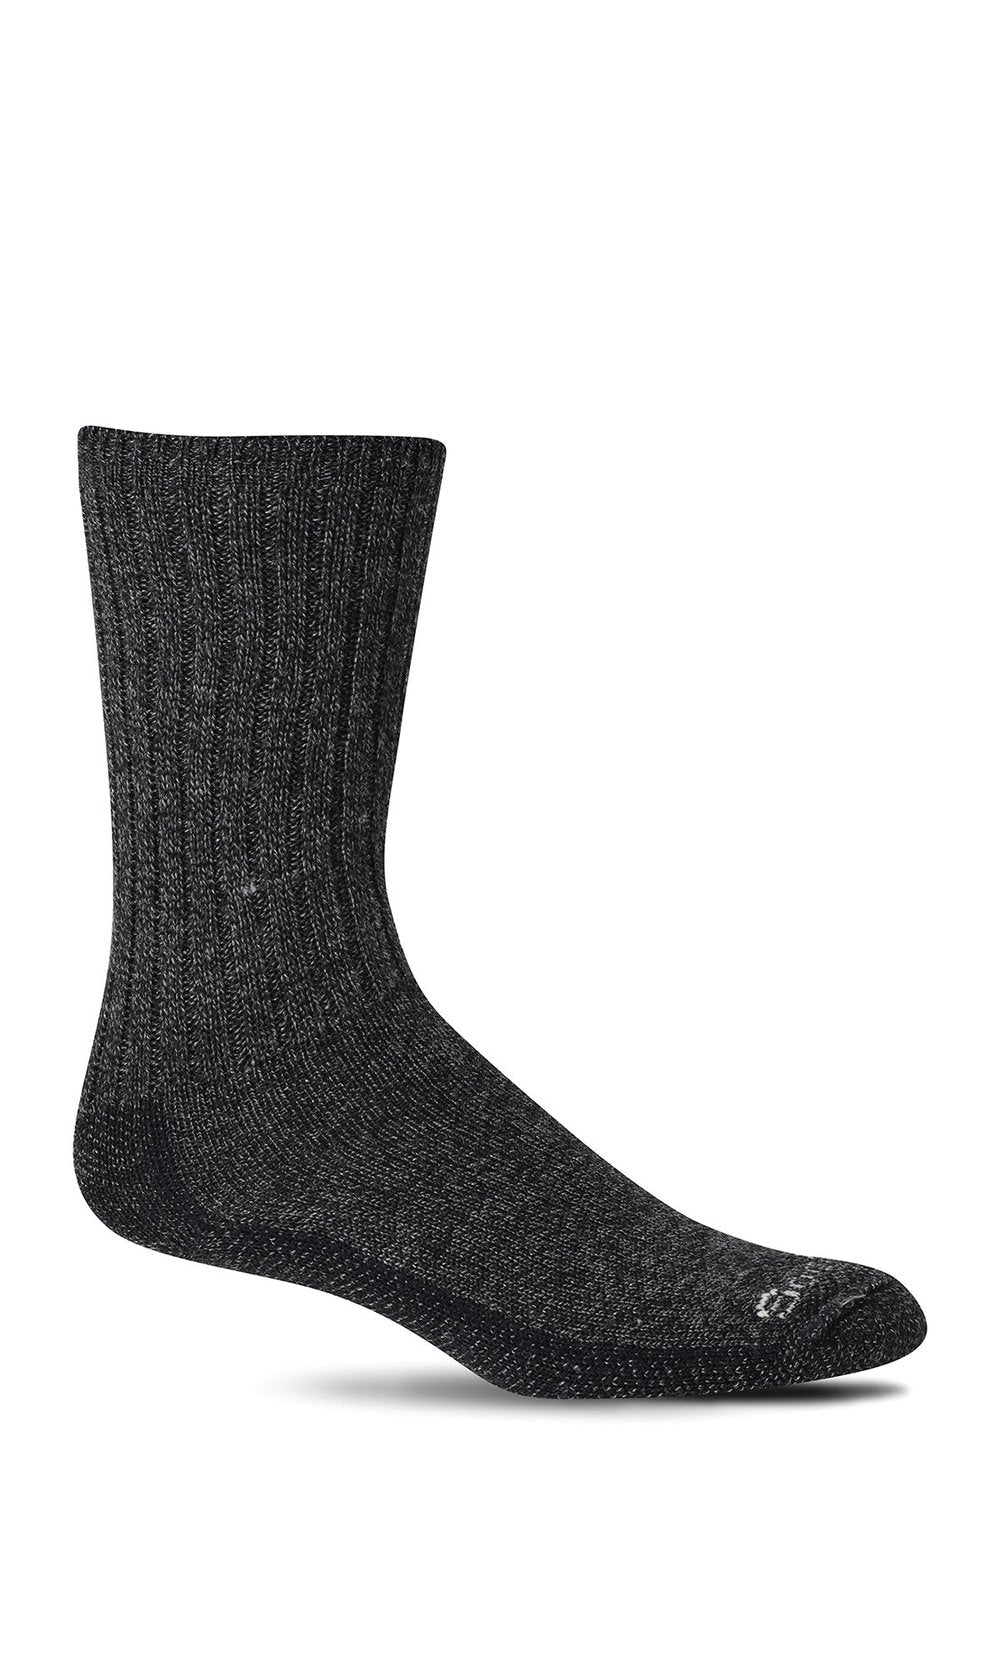 Sockwell - Men's Big Easy Relaxed Fit Socks - Black